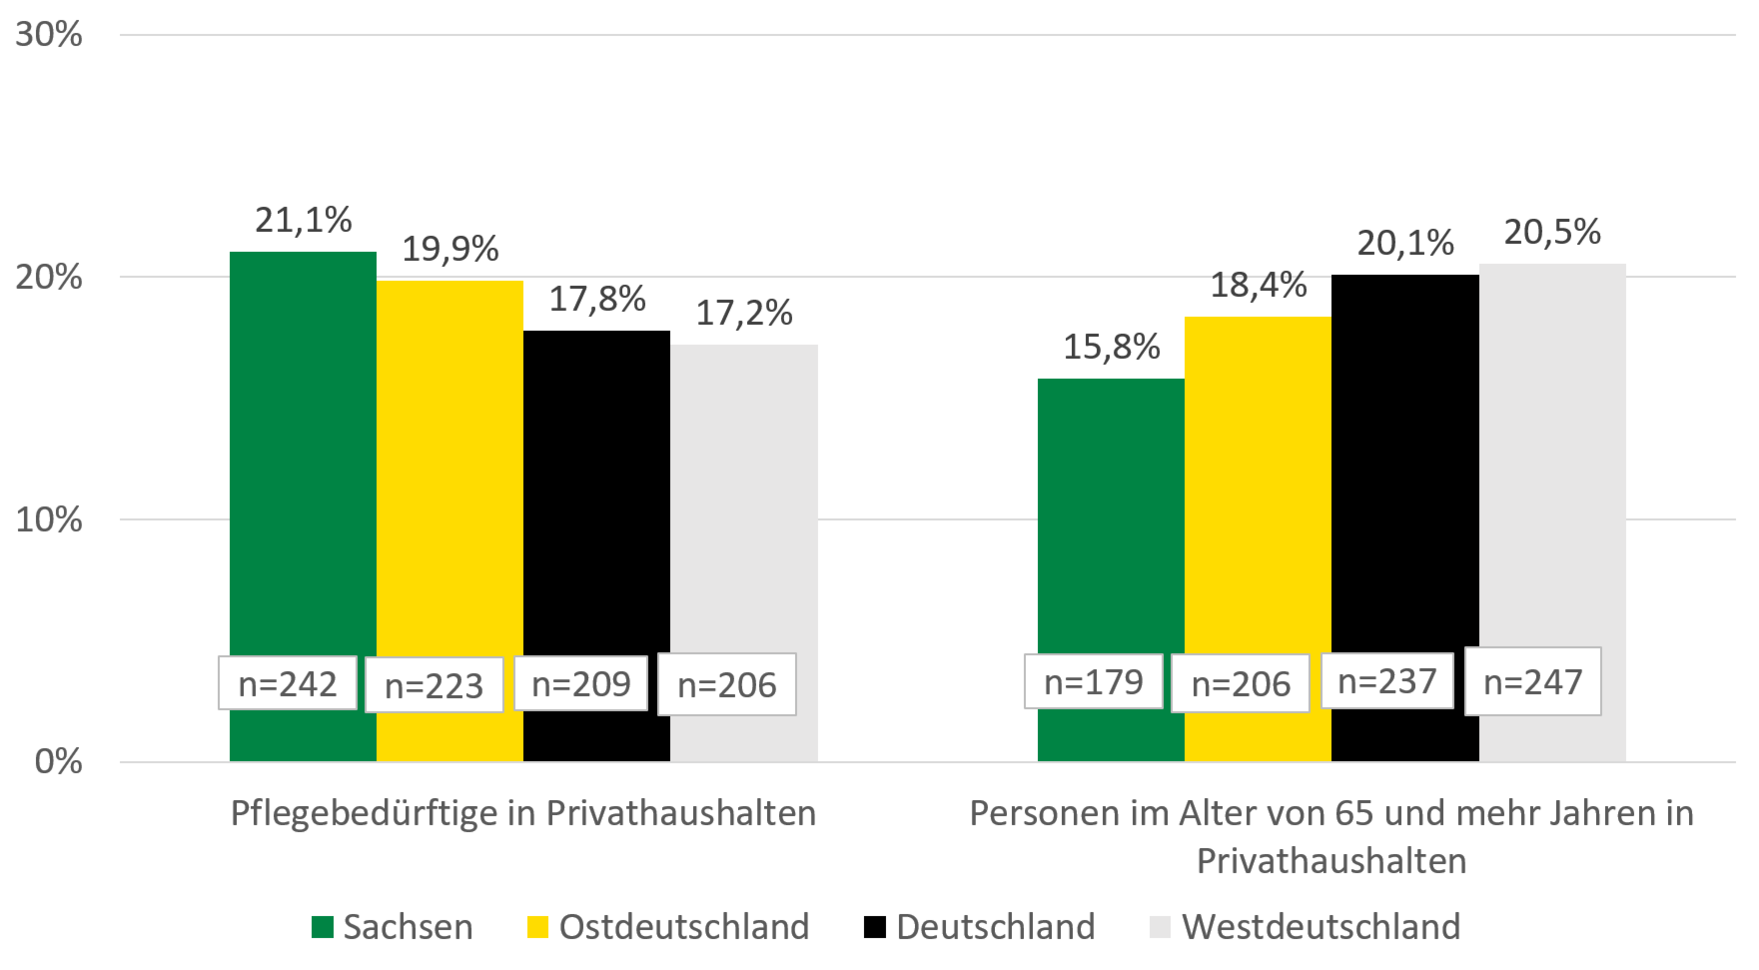 Die Grafik stellt die im Text beschriebenen Veränderungen des Nettoäquivalenzeinkommens für Sachsen, Ost-, West- und Gesamtdeutschland dar.